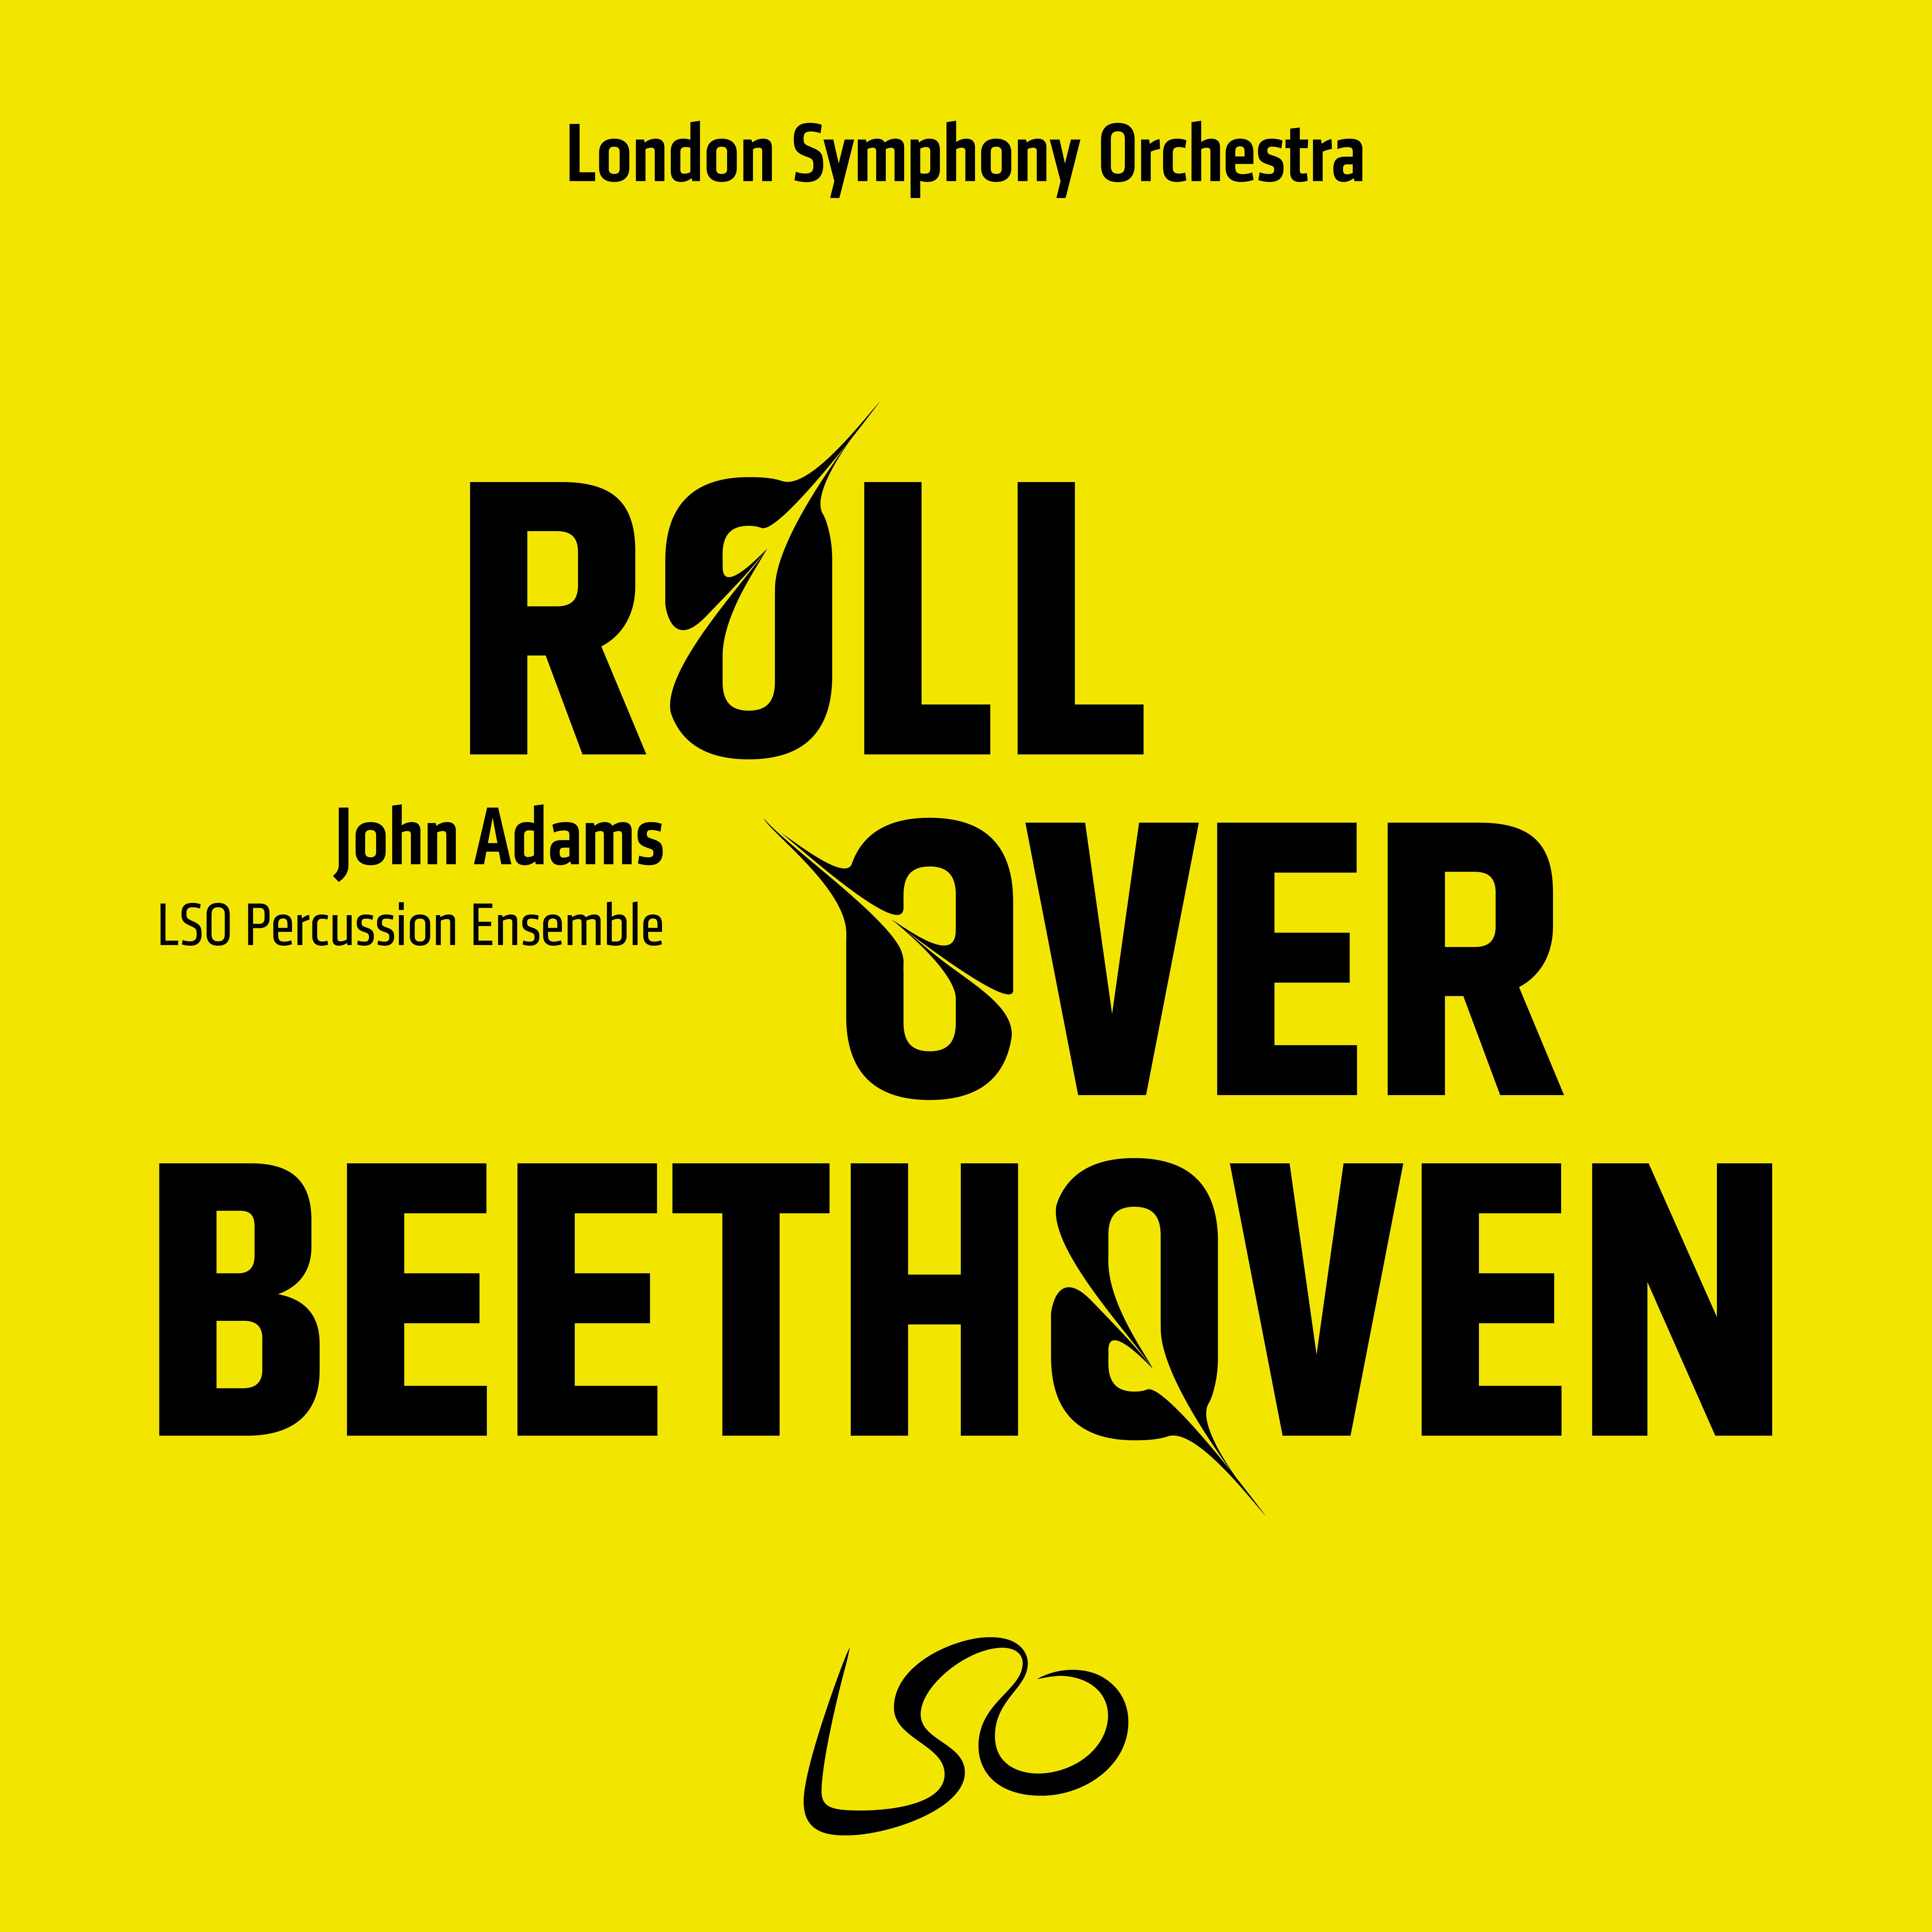 Roll Over Beethoven: II. Andantino